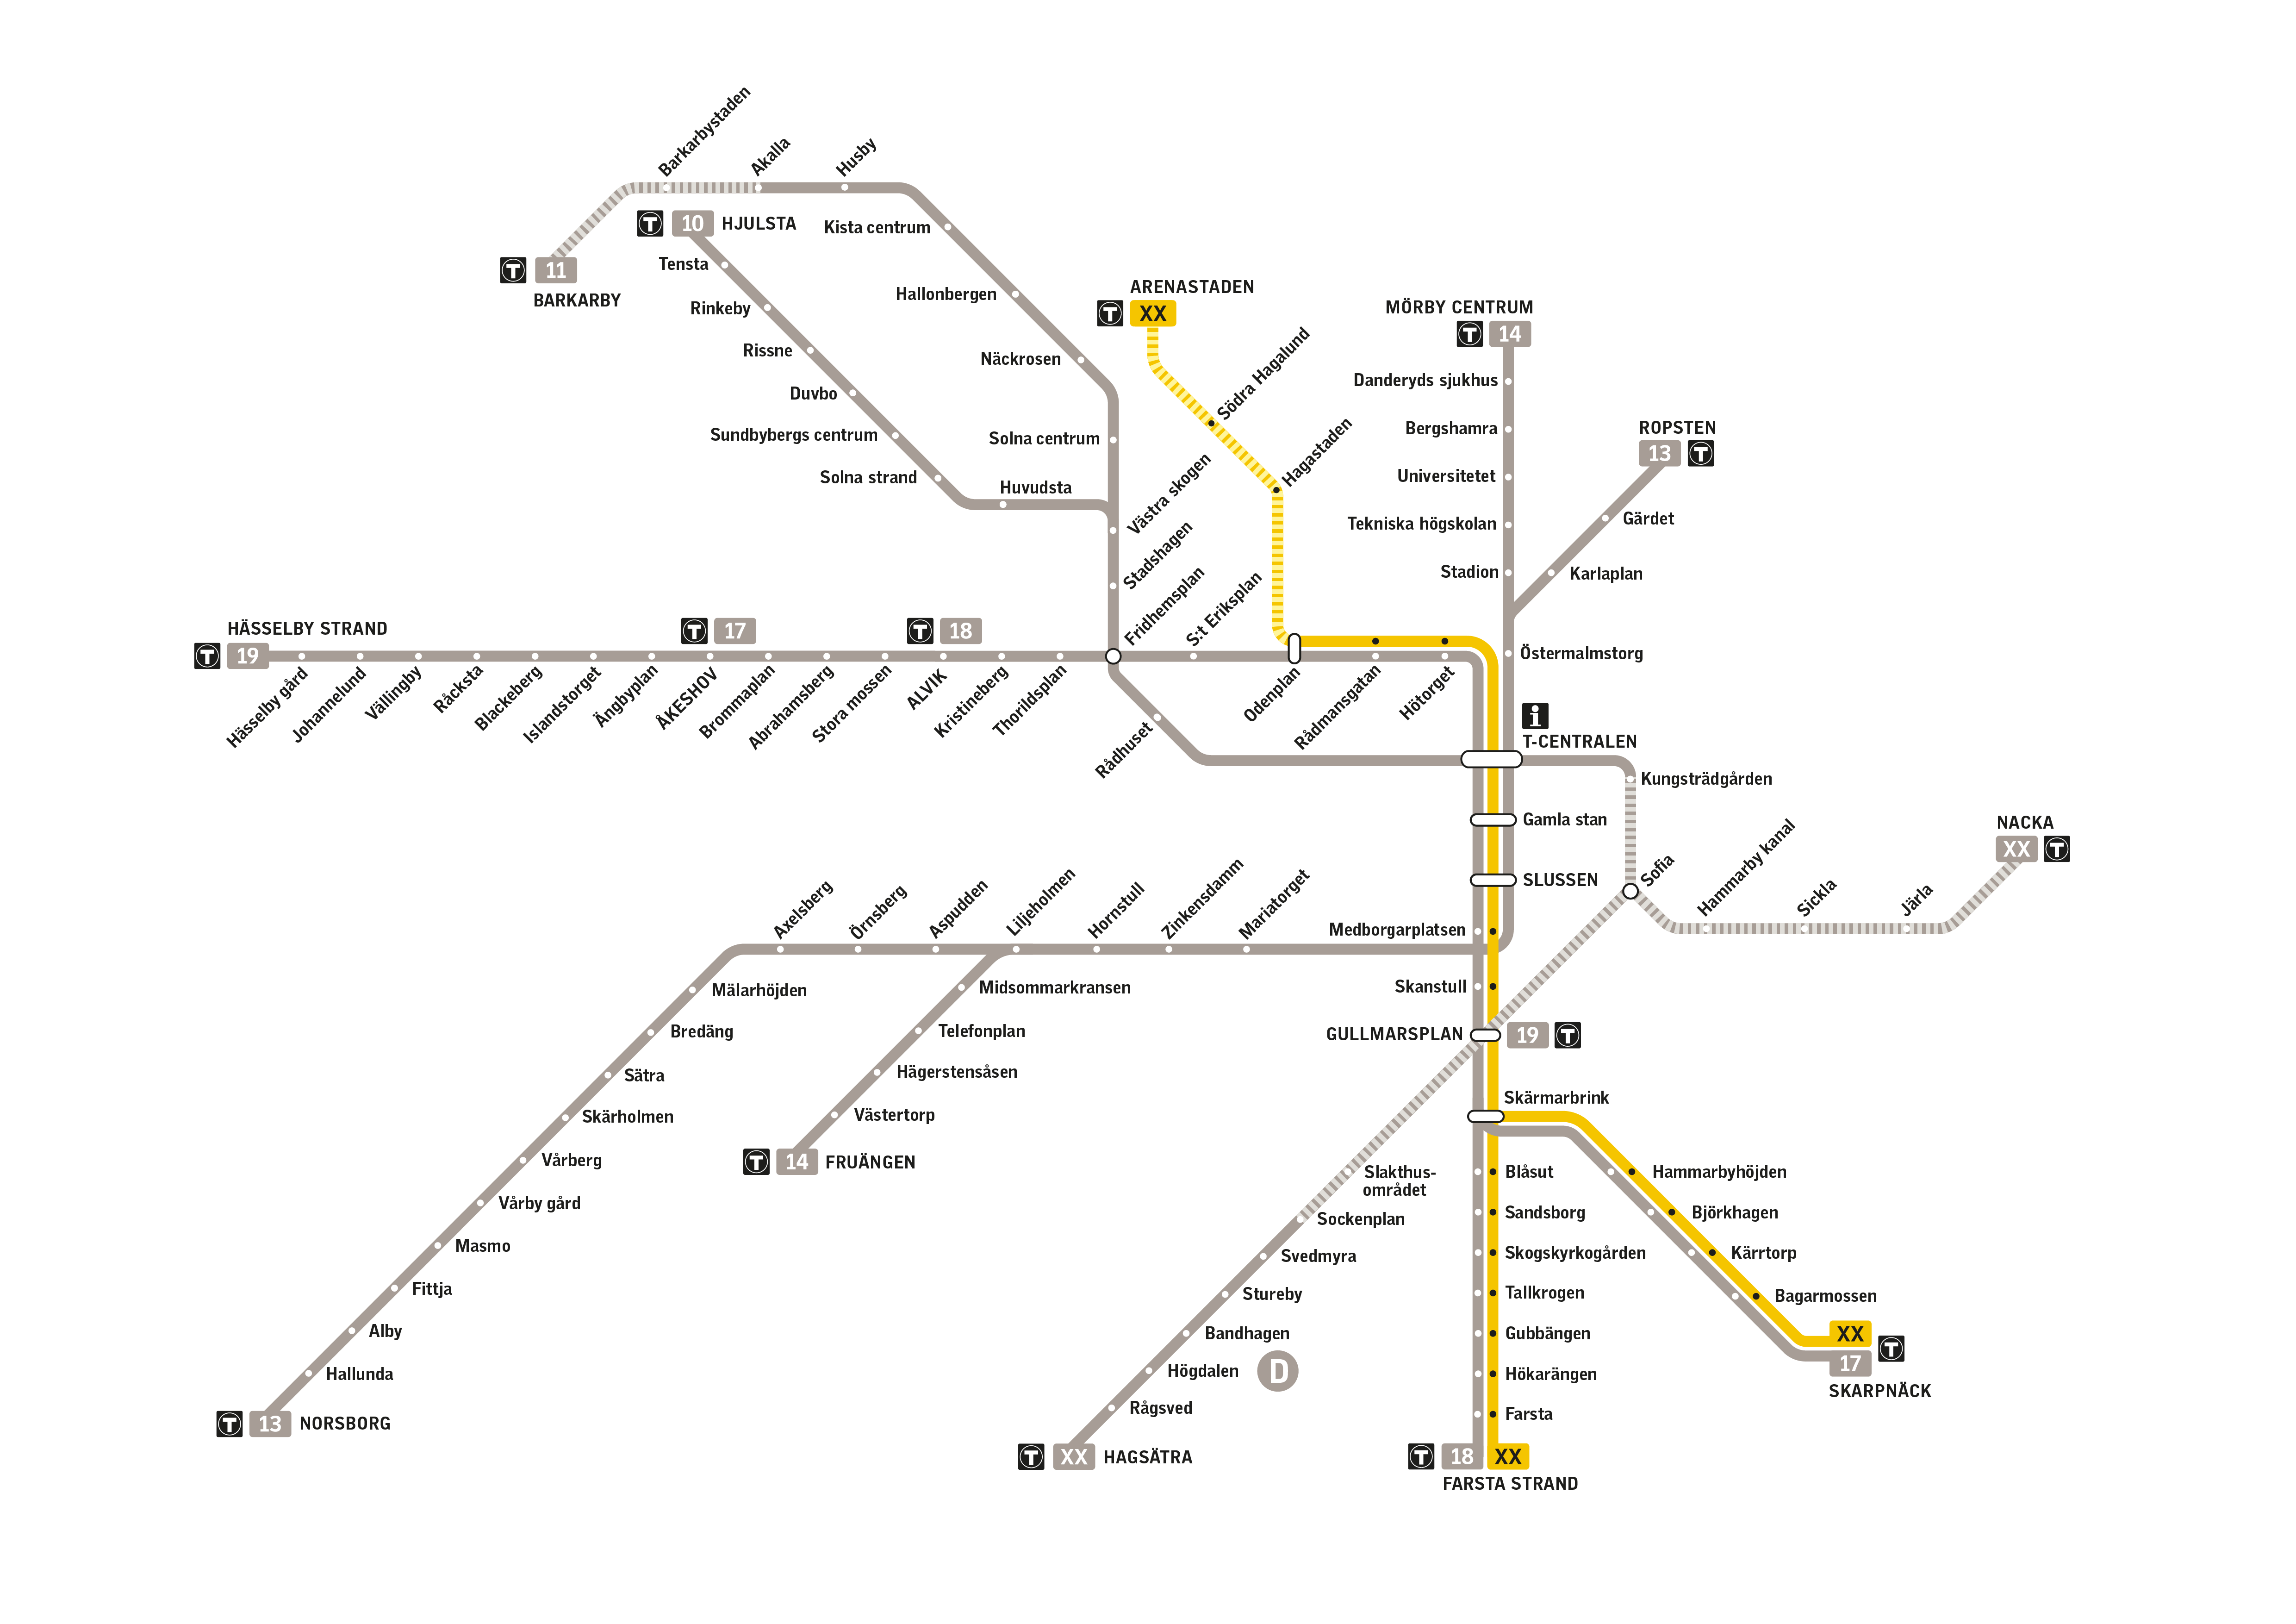 Tunnelbanenätet med utbyggnad av den gula linjen